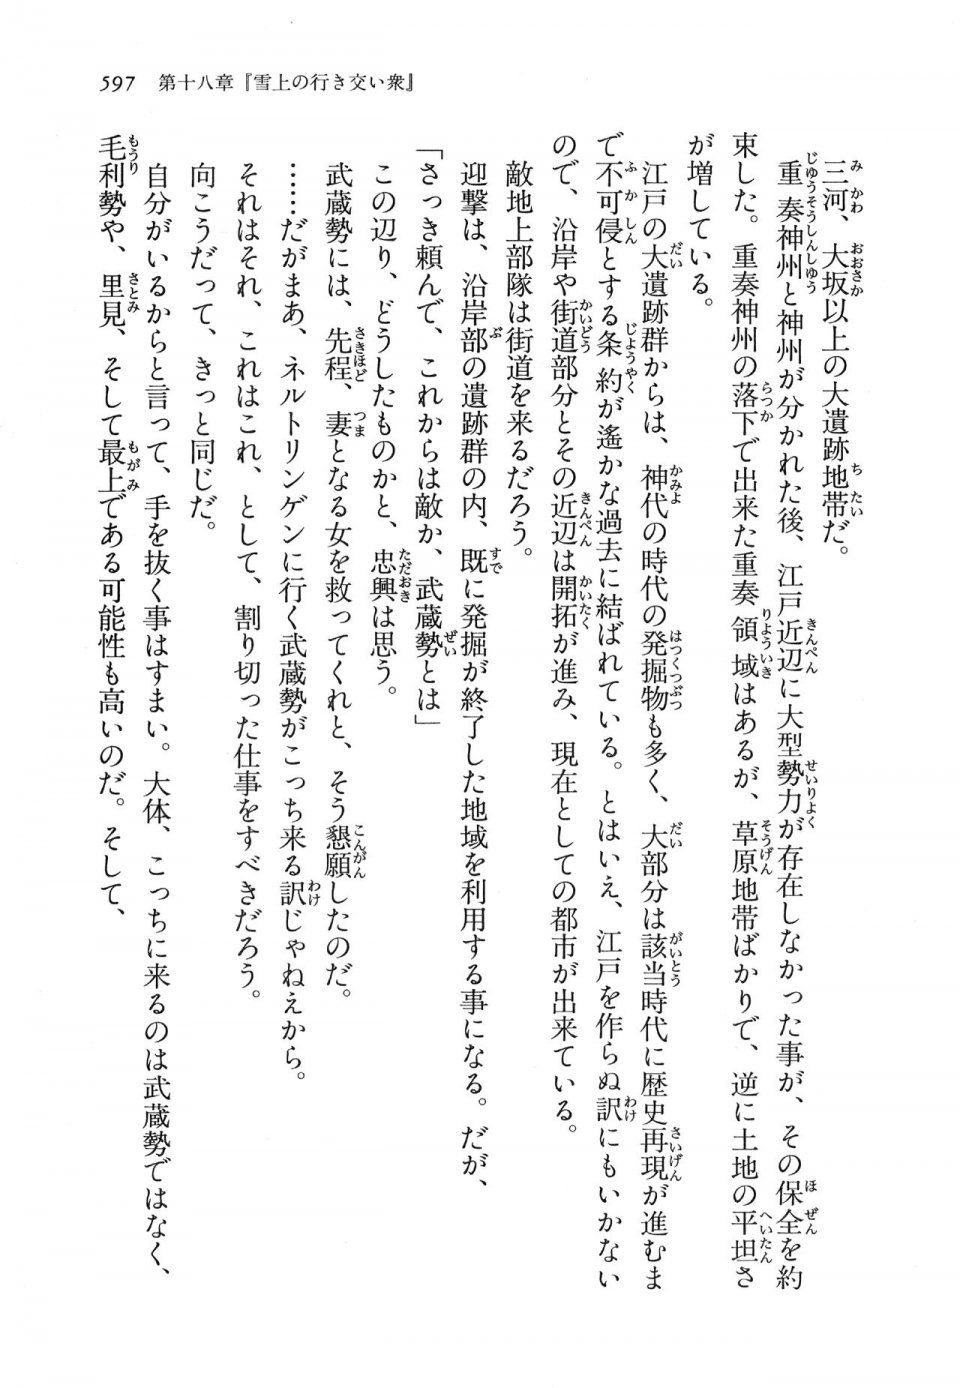 Kyoukai Senjou no Horizon LN Vol 16(7A) - Photo #597